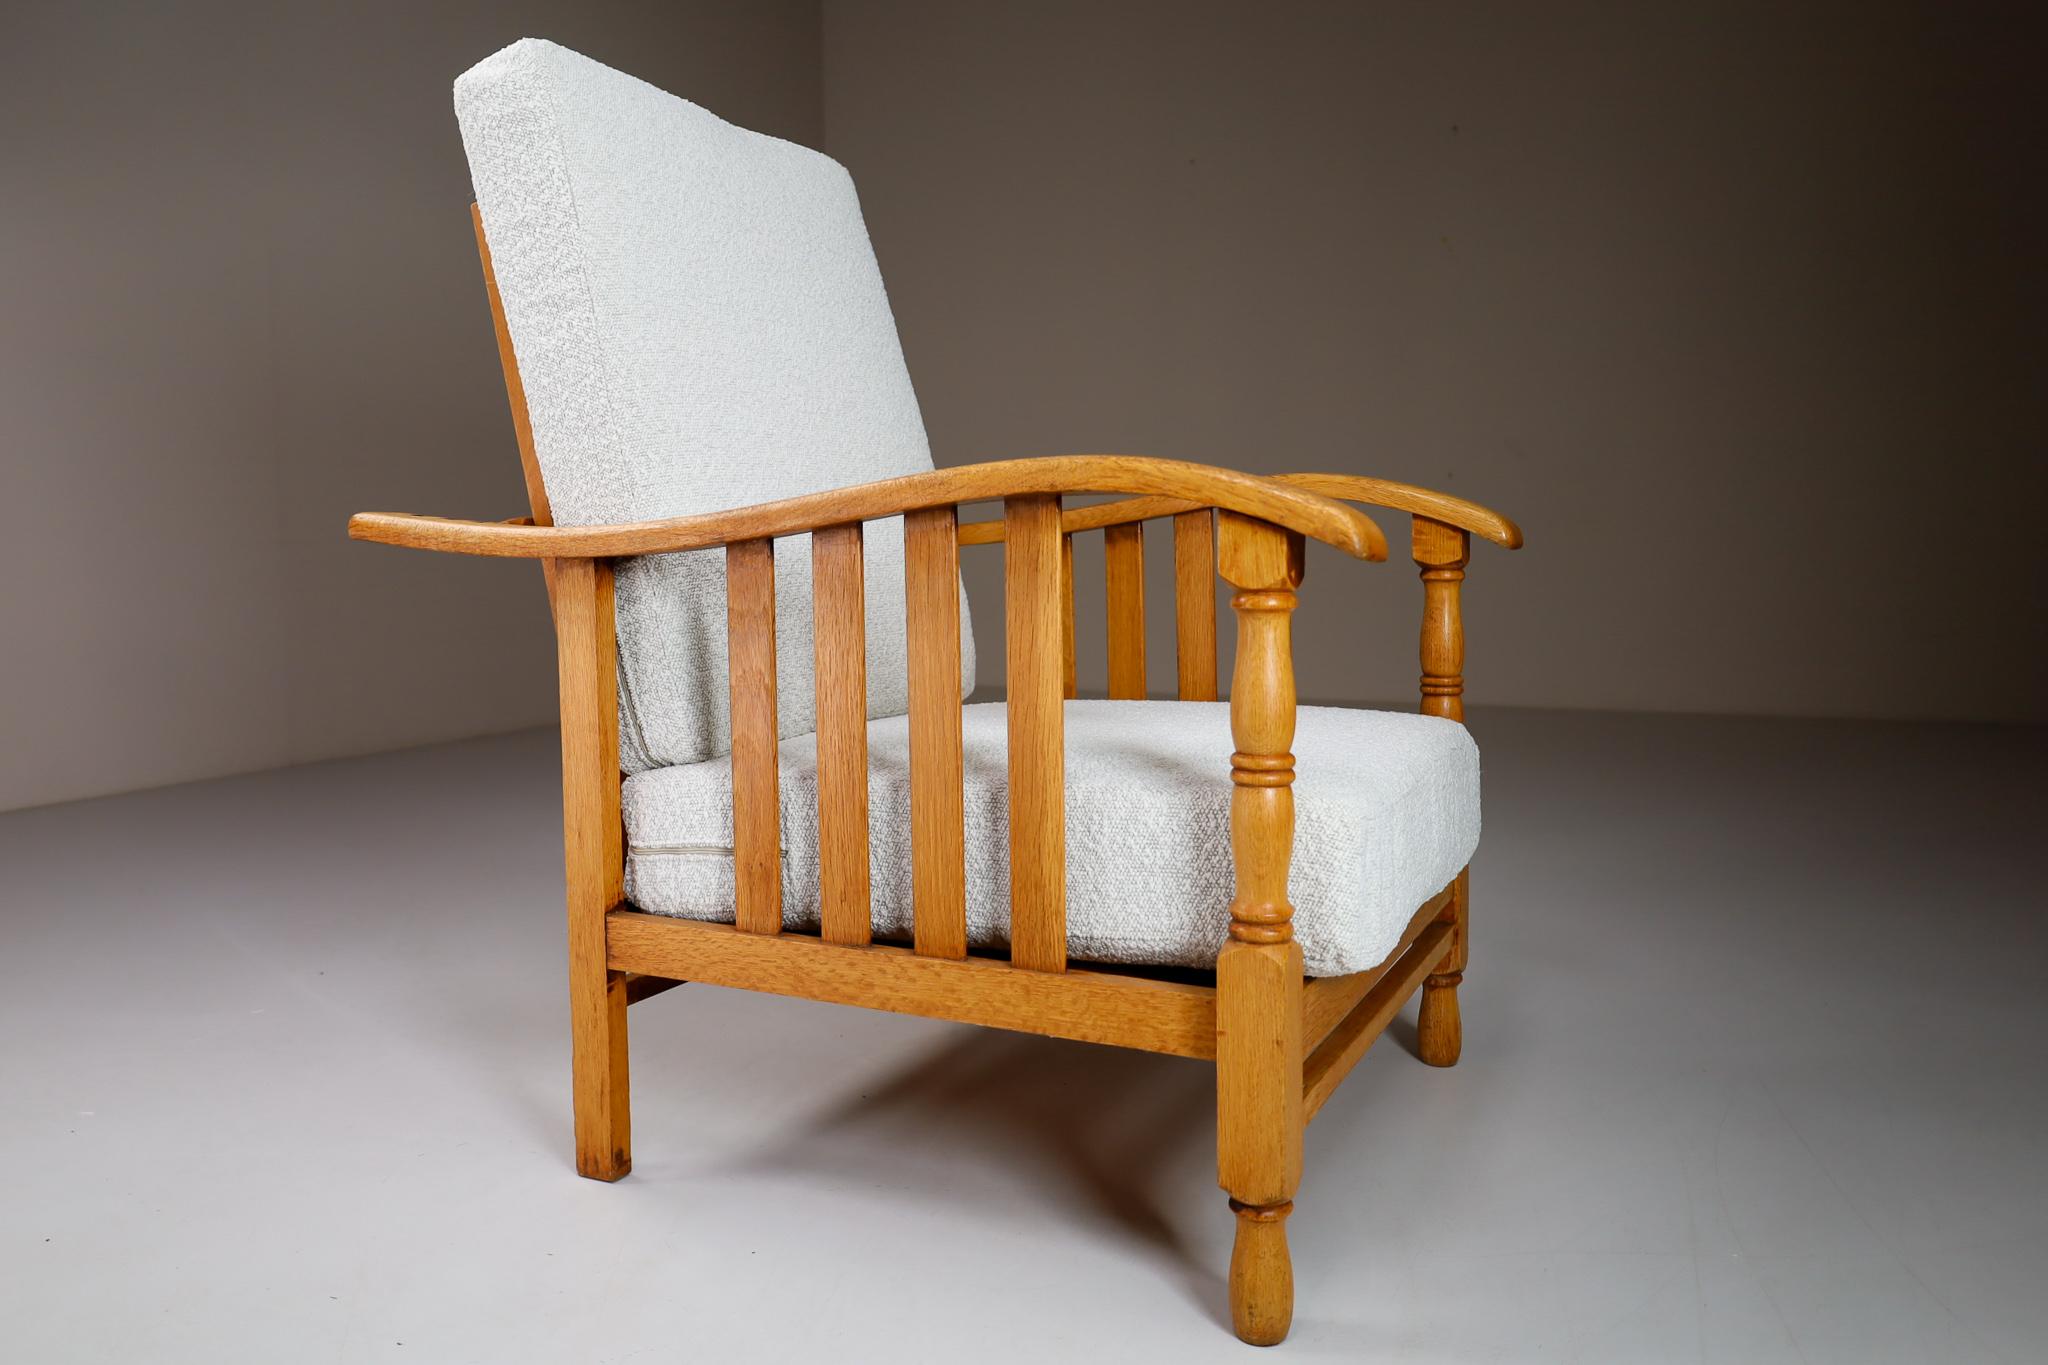 Sessel oder Lounge Chair aus der Mitte des Jahrhunderts, hergestellt und entworfen in Frankreich in den 1950er Jahren. Aus Eichenholz gefertigt und professionell mit Boucle-Stoff gepolstert. Diese Sessel sind ein echter Blickfang für jedes Interieur